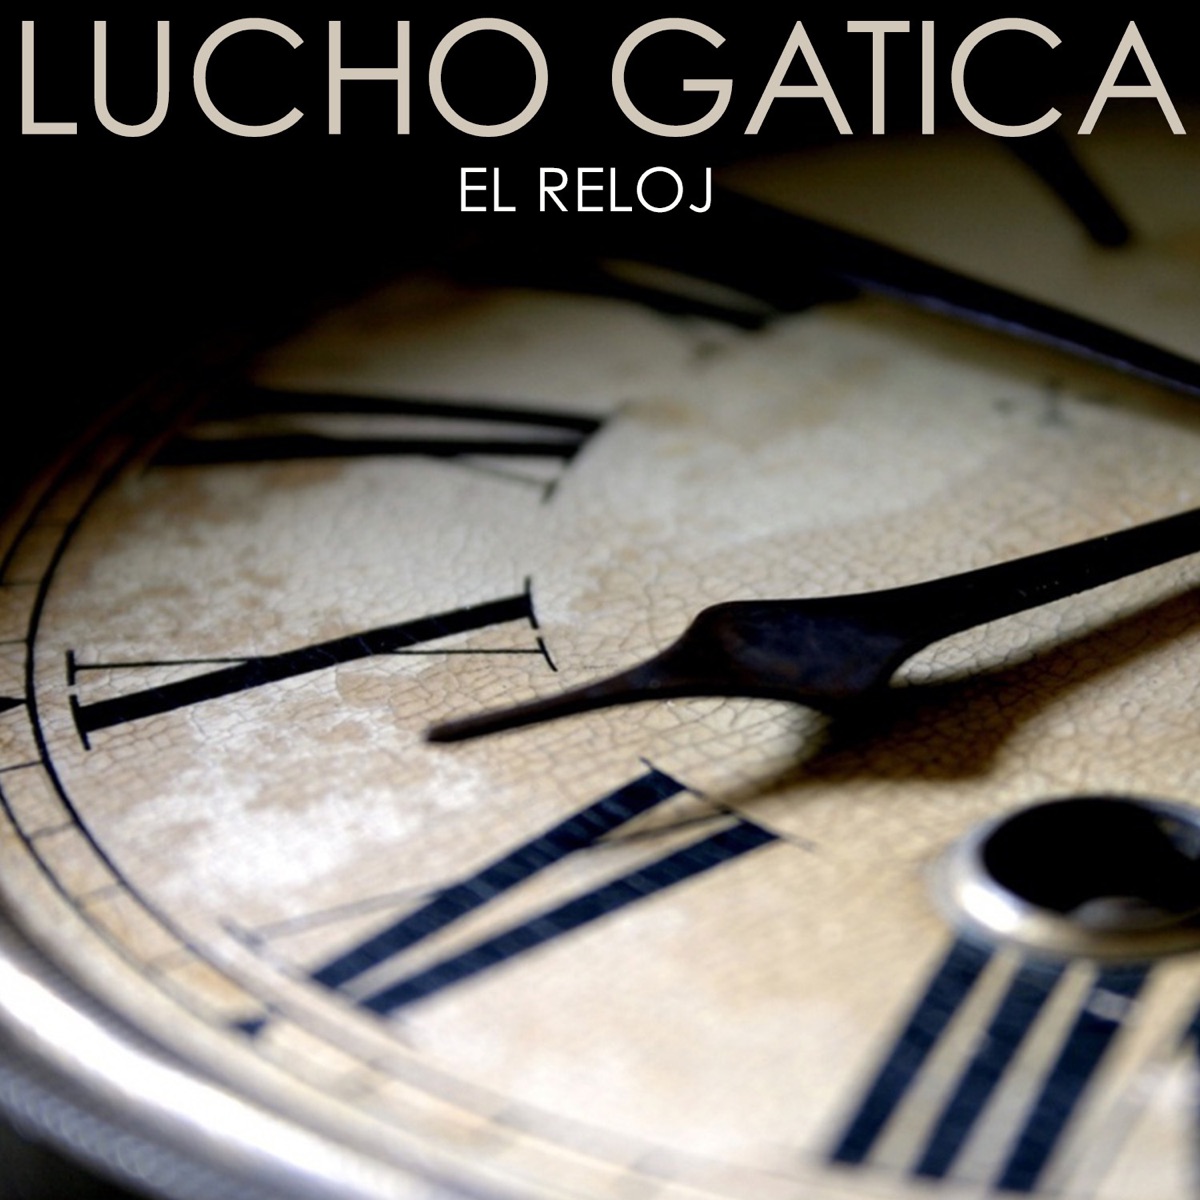 El Reloj - Single de Lucho Gatica en Apple Music